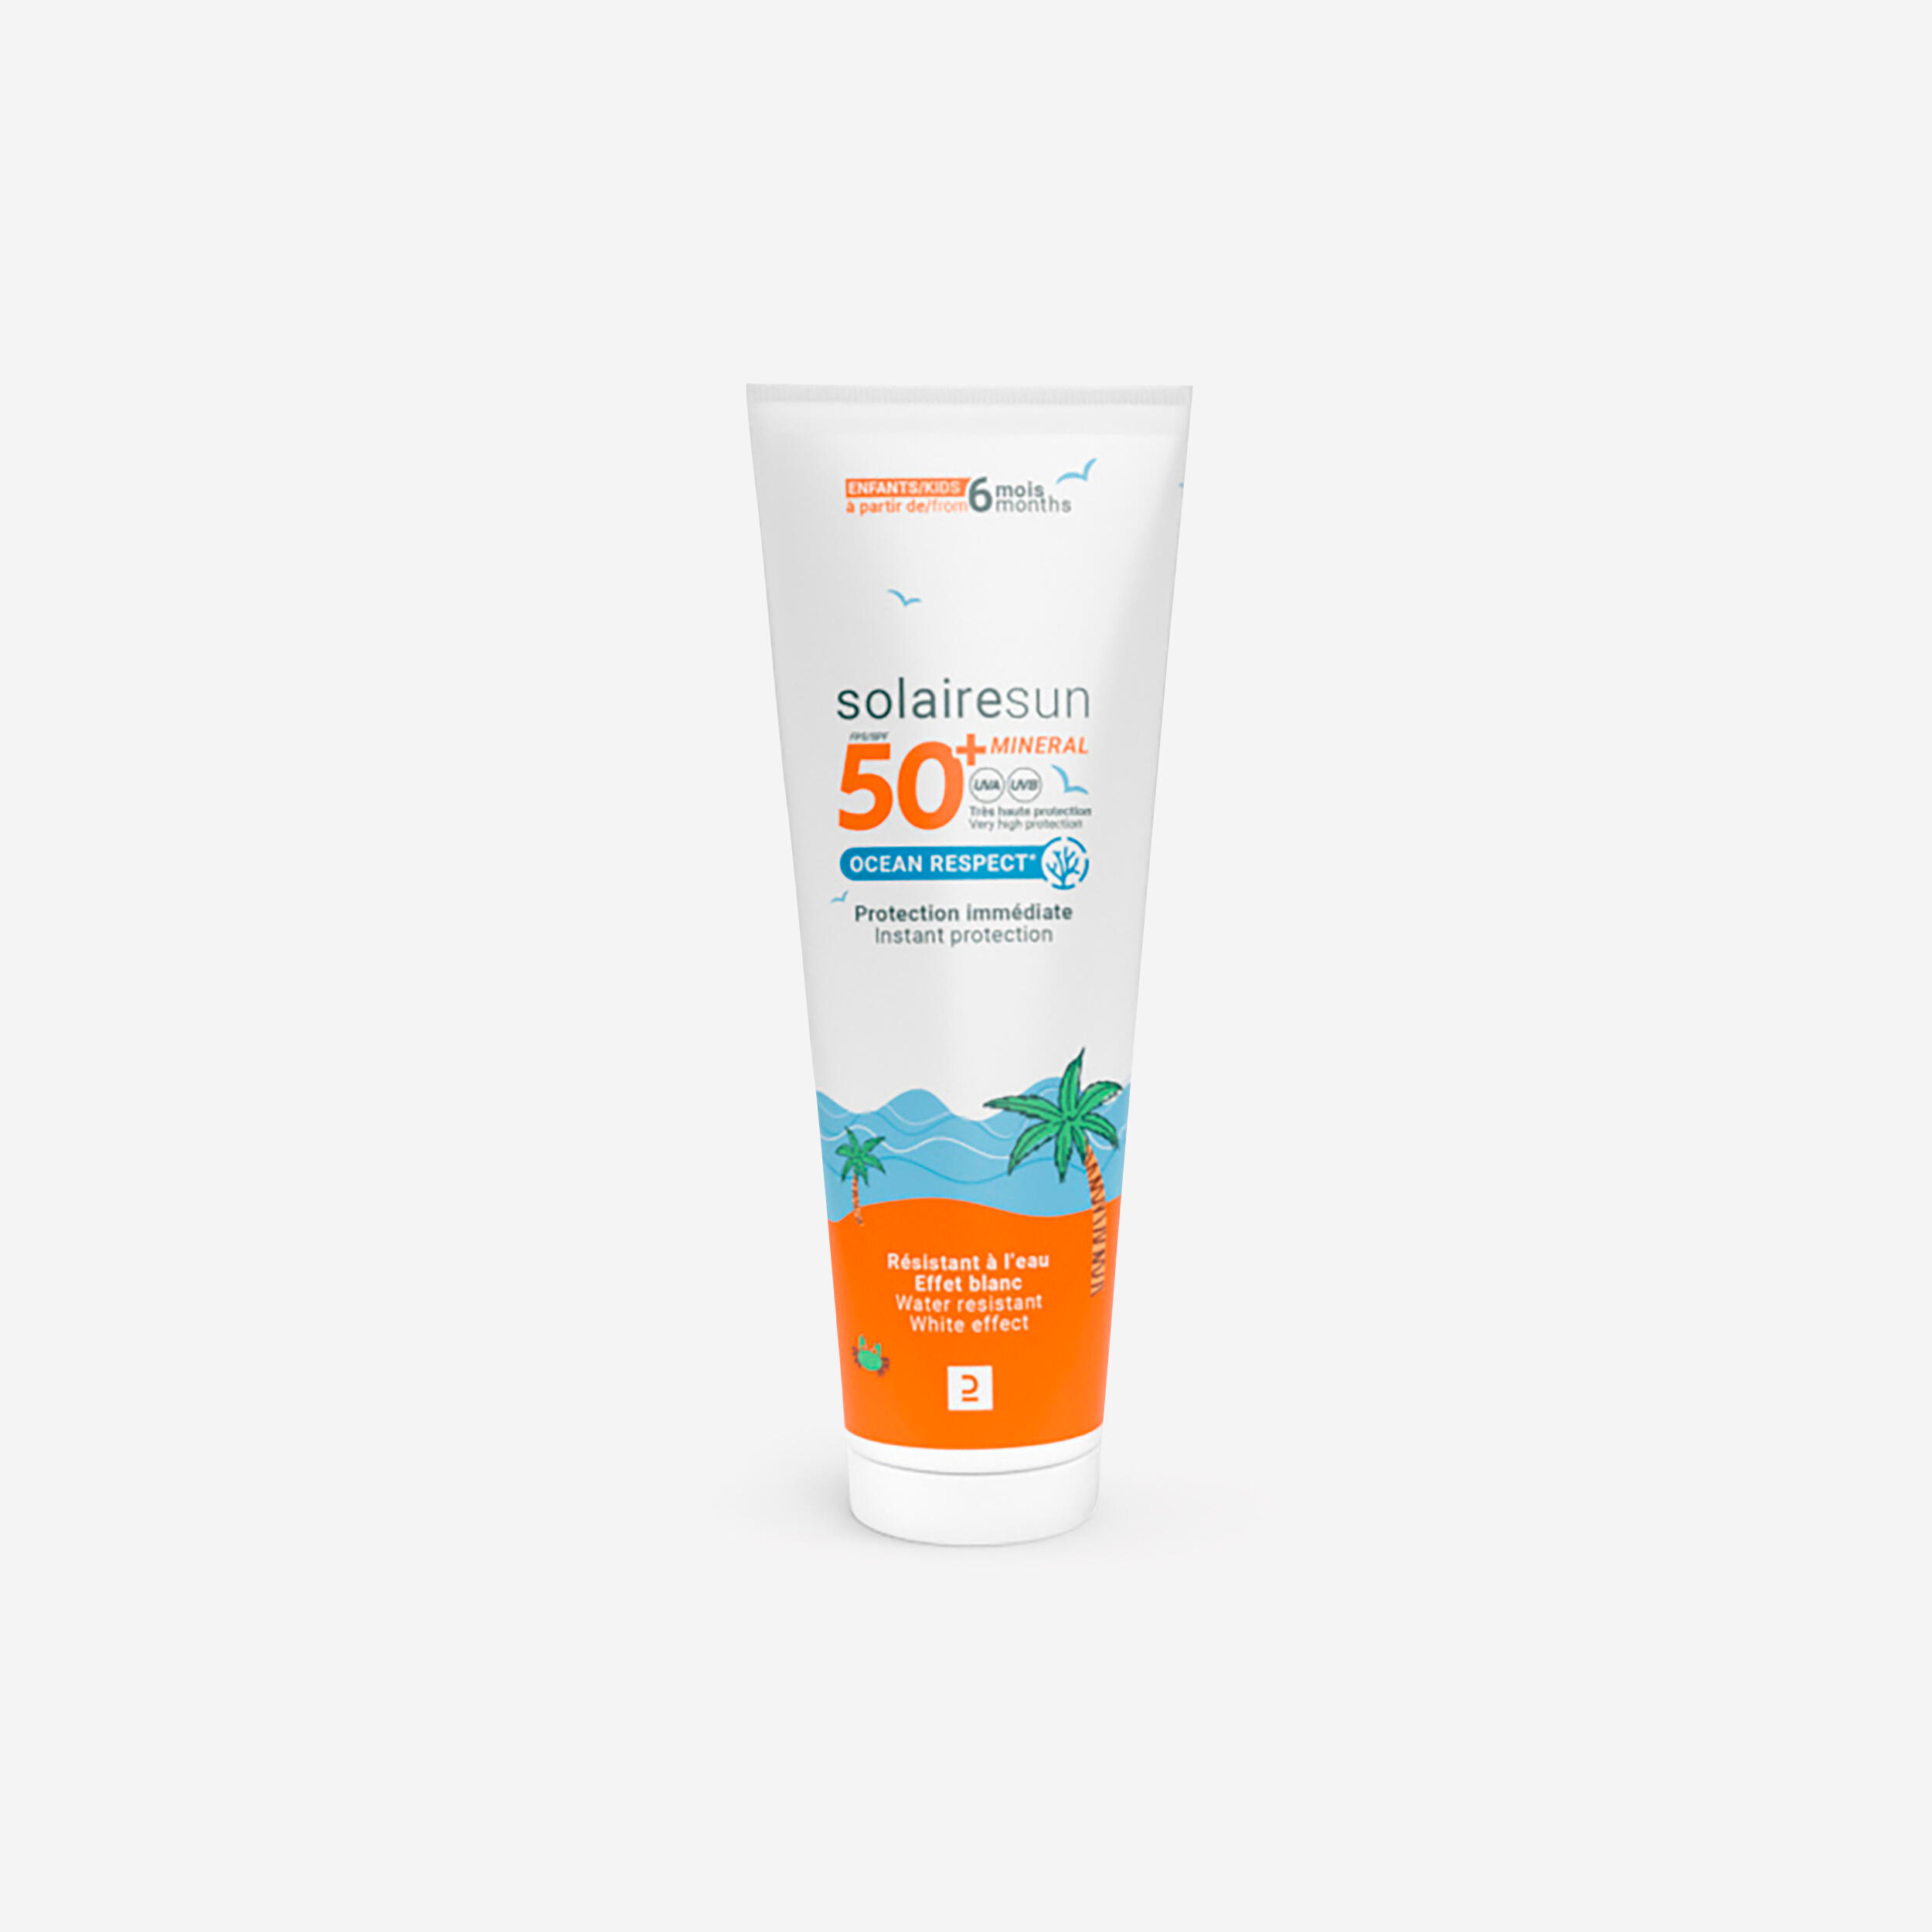 DECATHLON Kids' SPF50+ Mineral Sunscreen
100g